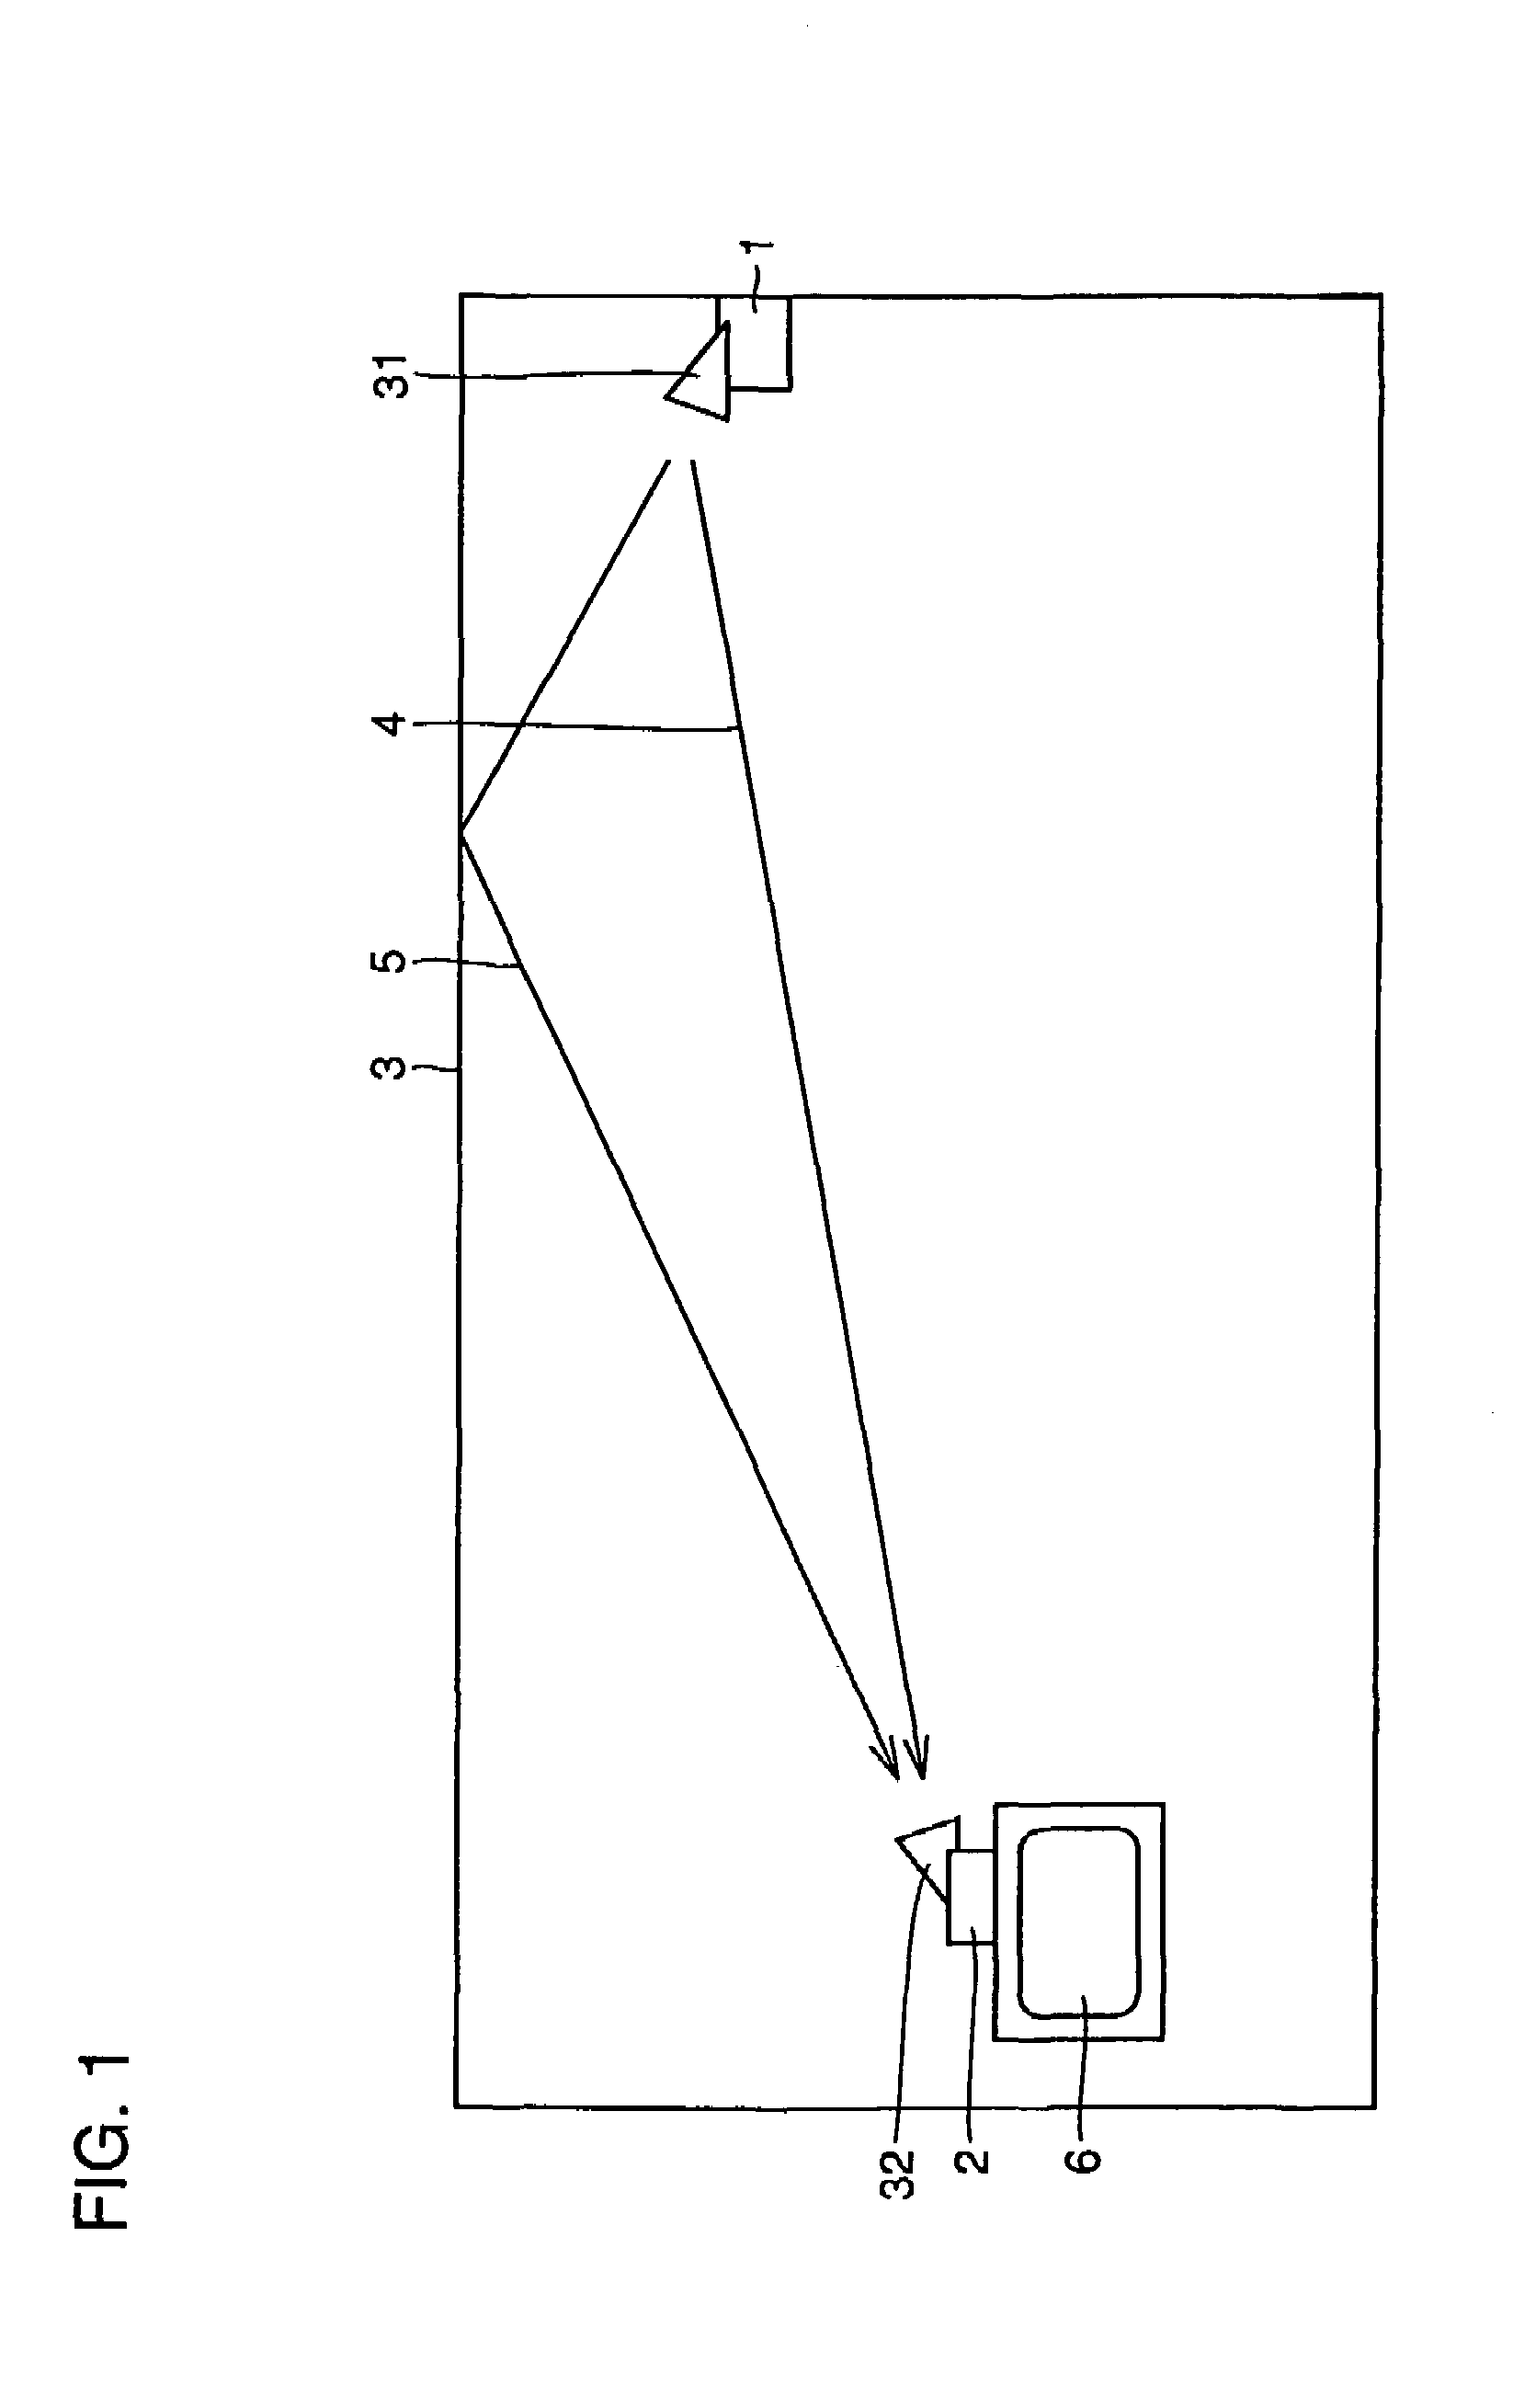 Millimeter band signal transmitting/receiving system having function of transmitting/receiving millimeter band signal and house provided with the same